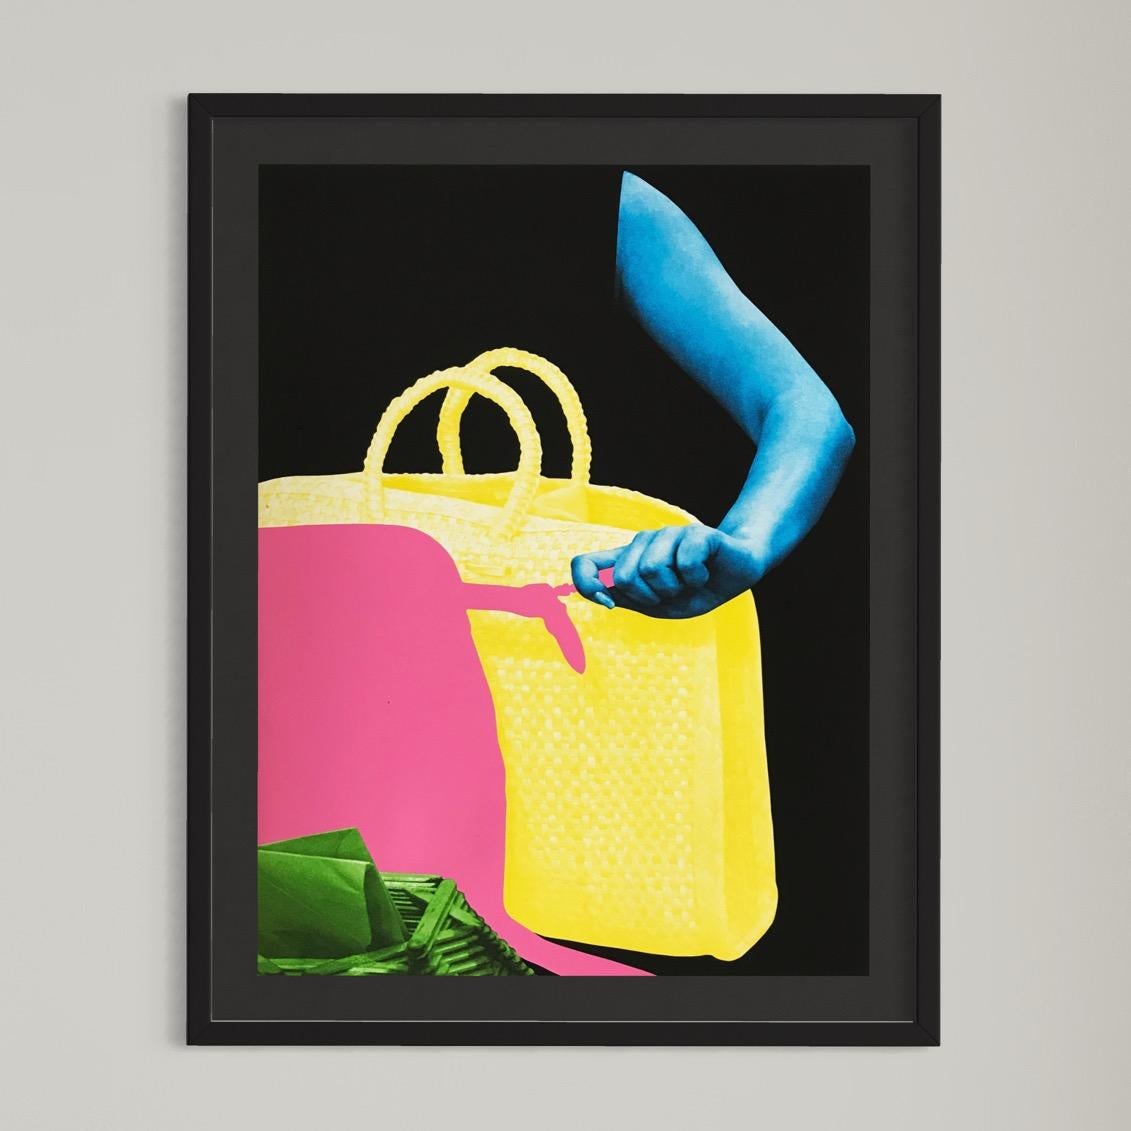 John Baldessari, zwei Taschen und Umschlaghalter – Konzeptuelle Kunst, signierter Druck